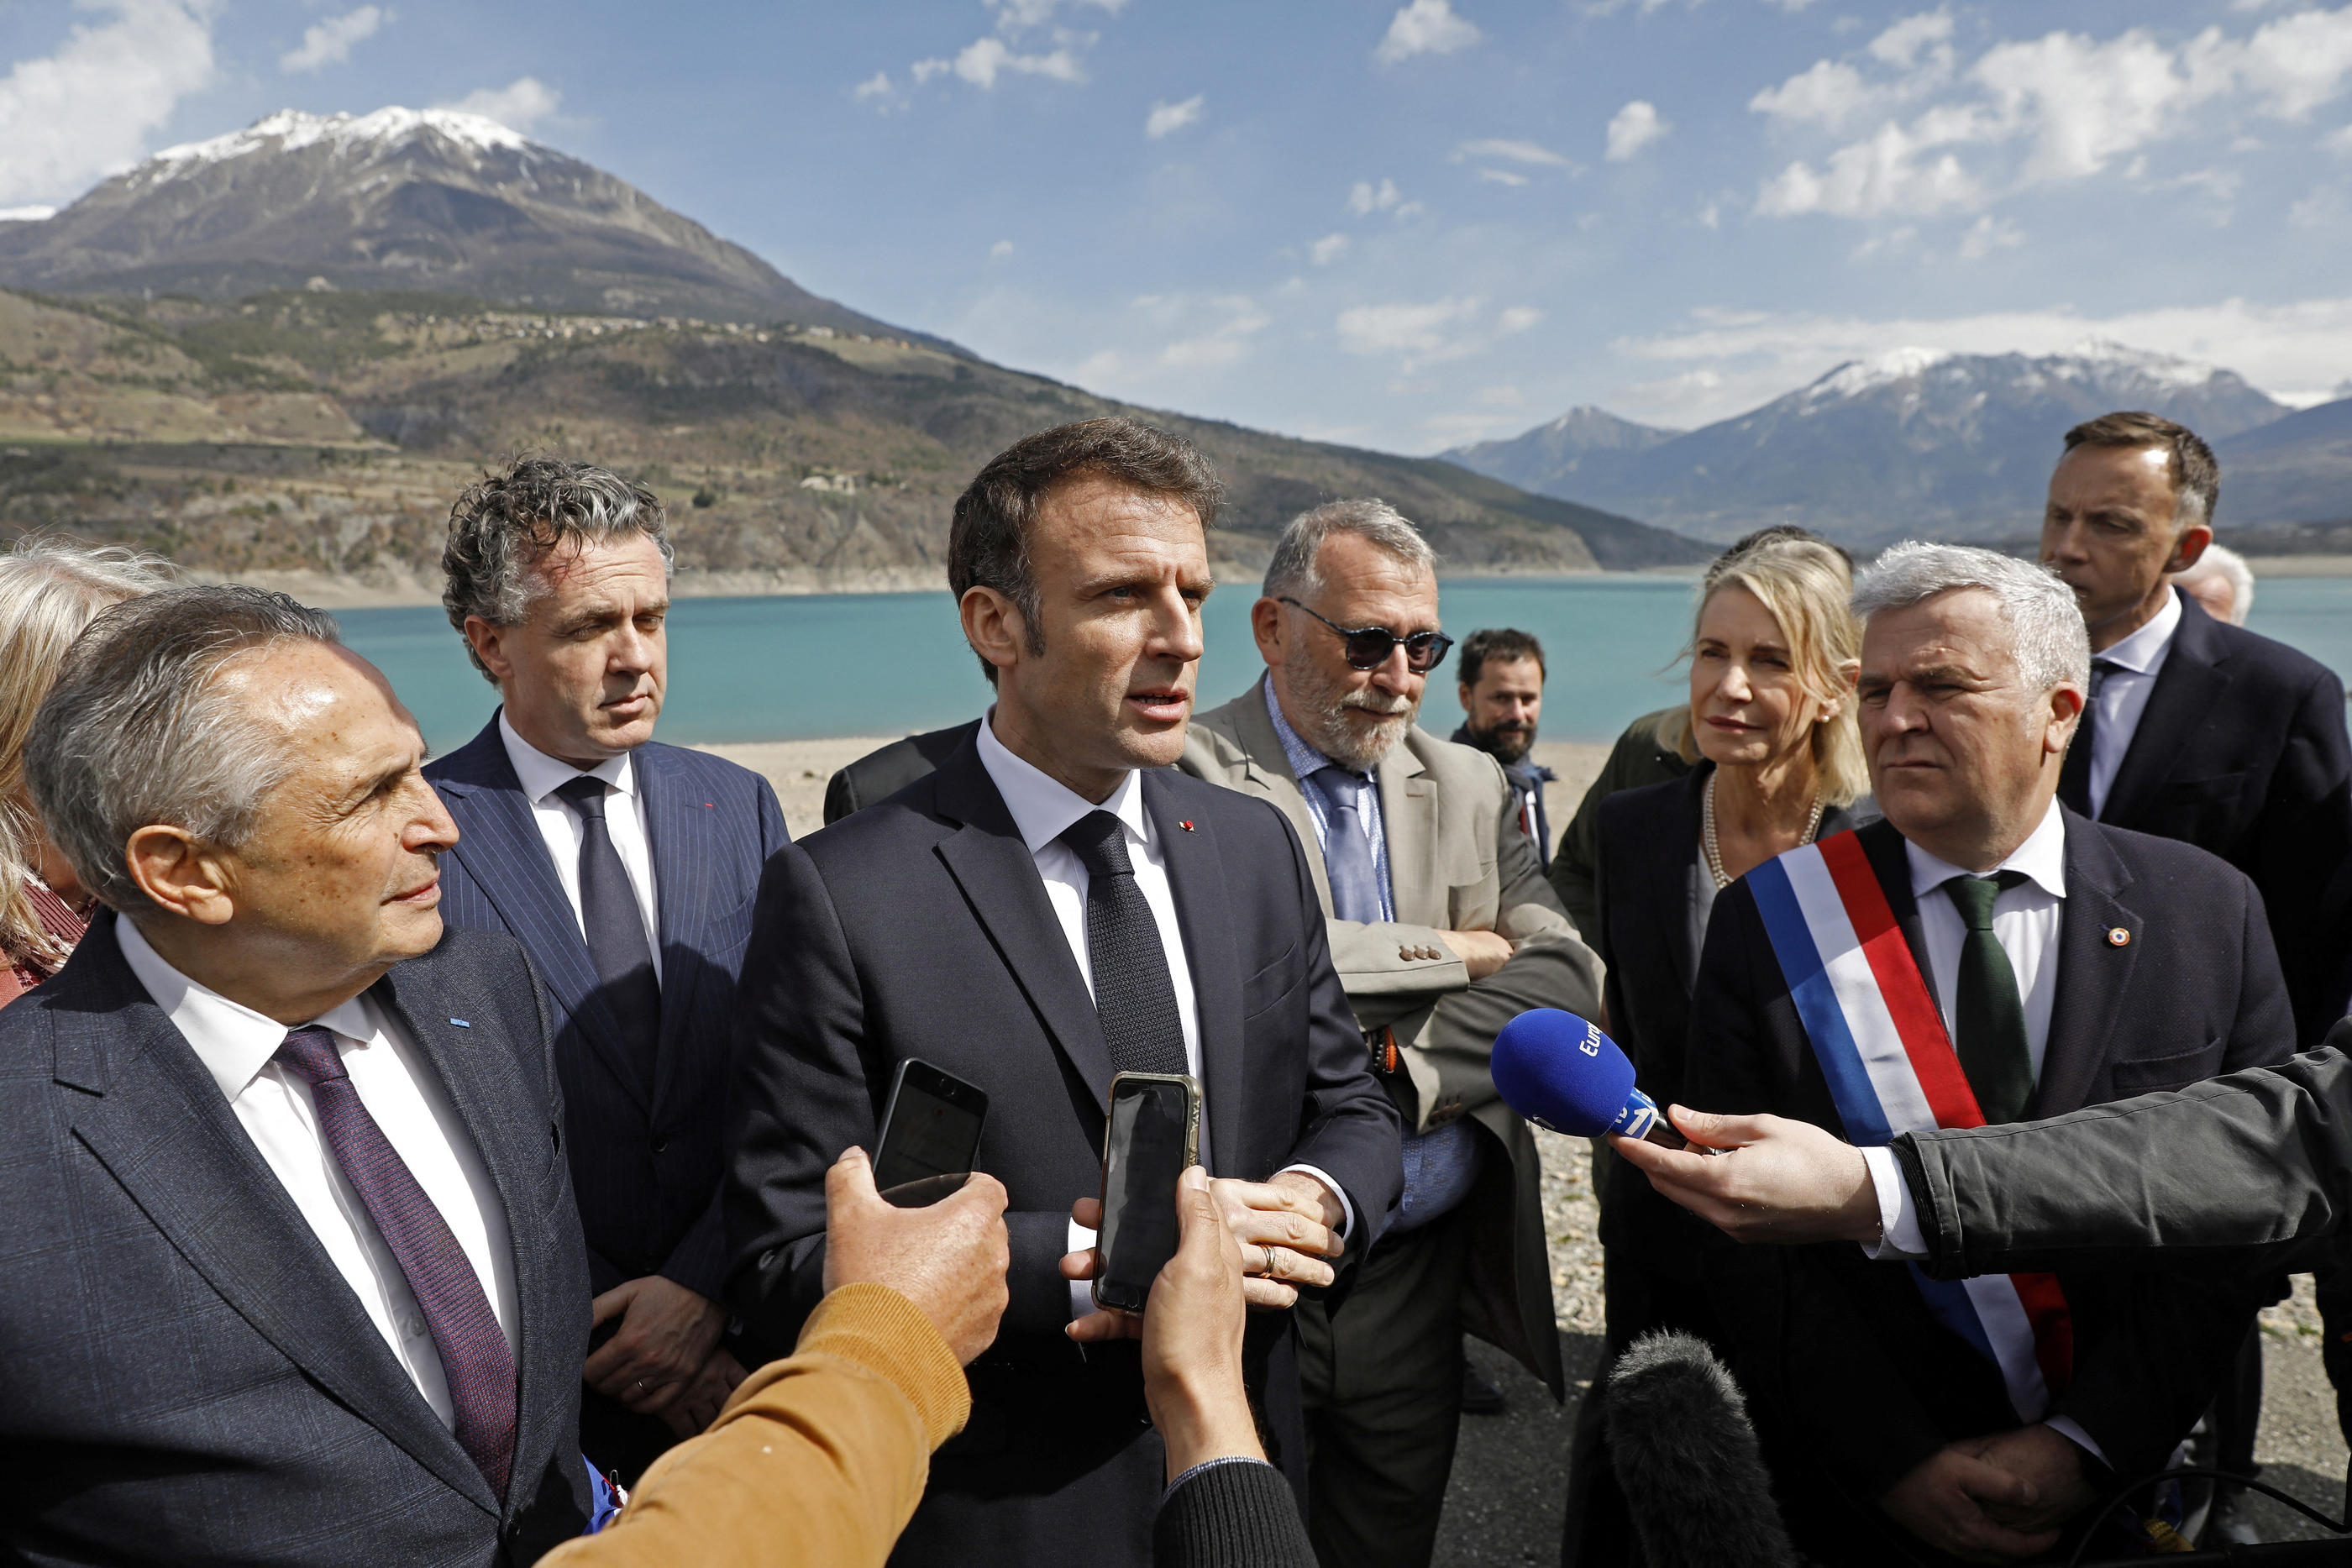 En pleine contestation contre la réforme des retraites, Emmanuel Macron a effectué ce jeudi son premier déplacement en région depuis près de deux mois, pour dévoiler un plan de gestion de l’eau. REUTERS/Sebastien Nogier/Pool